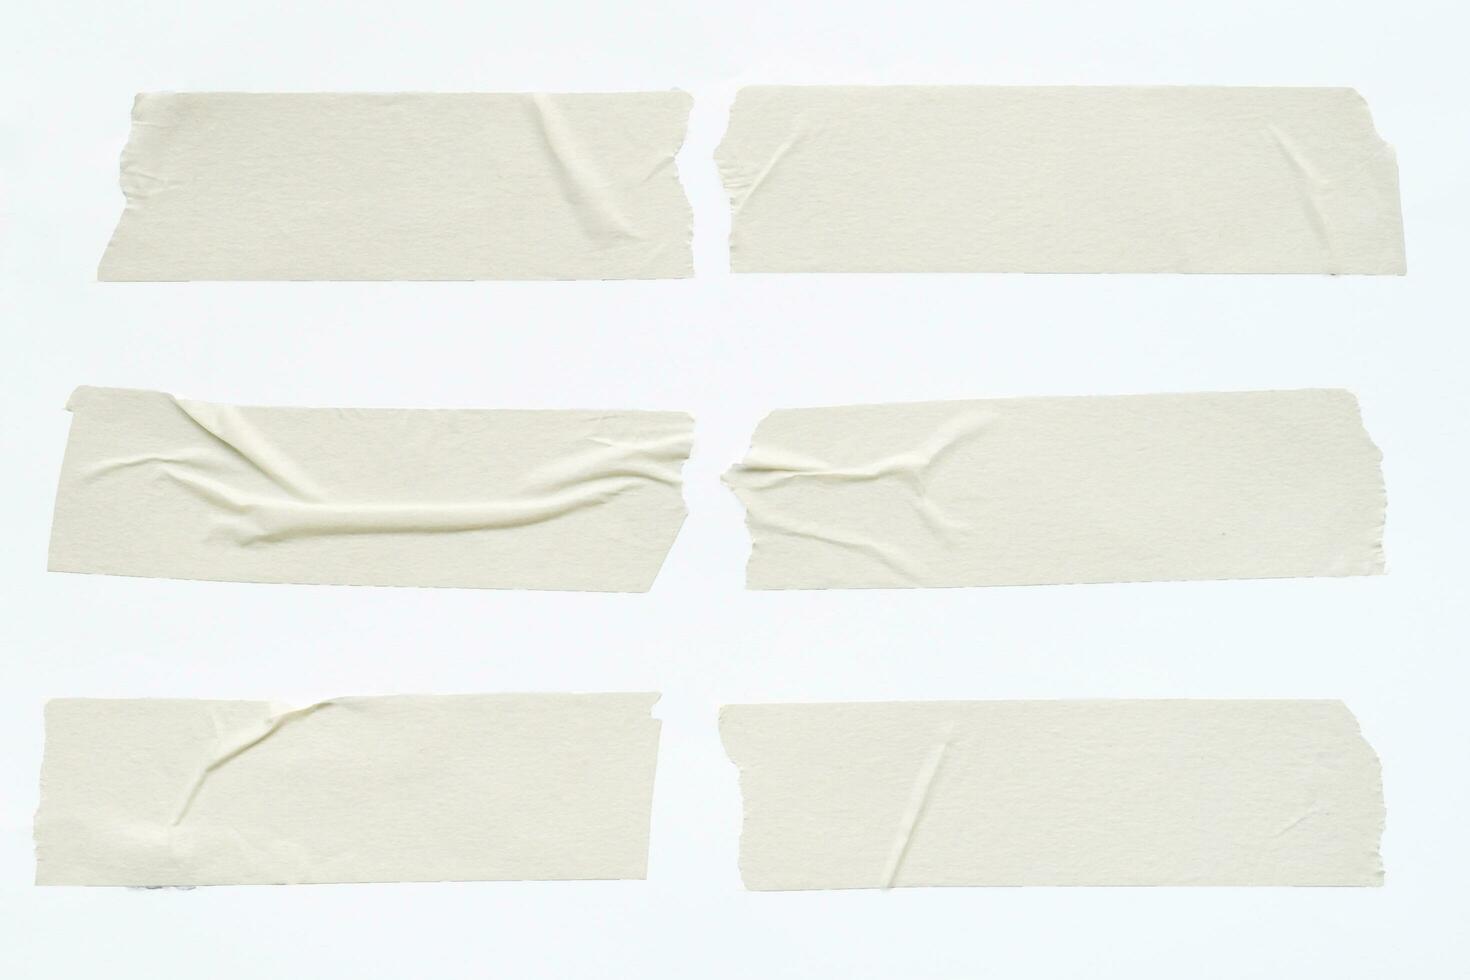 primer plano de la cinta adhesiva conjunto de arrugas sobre fondo blanco foto